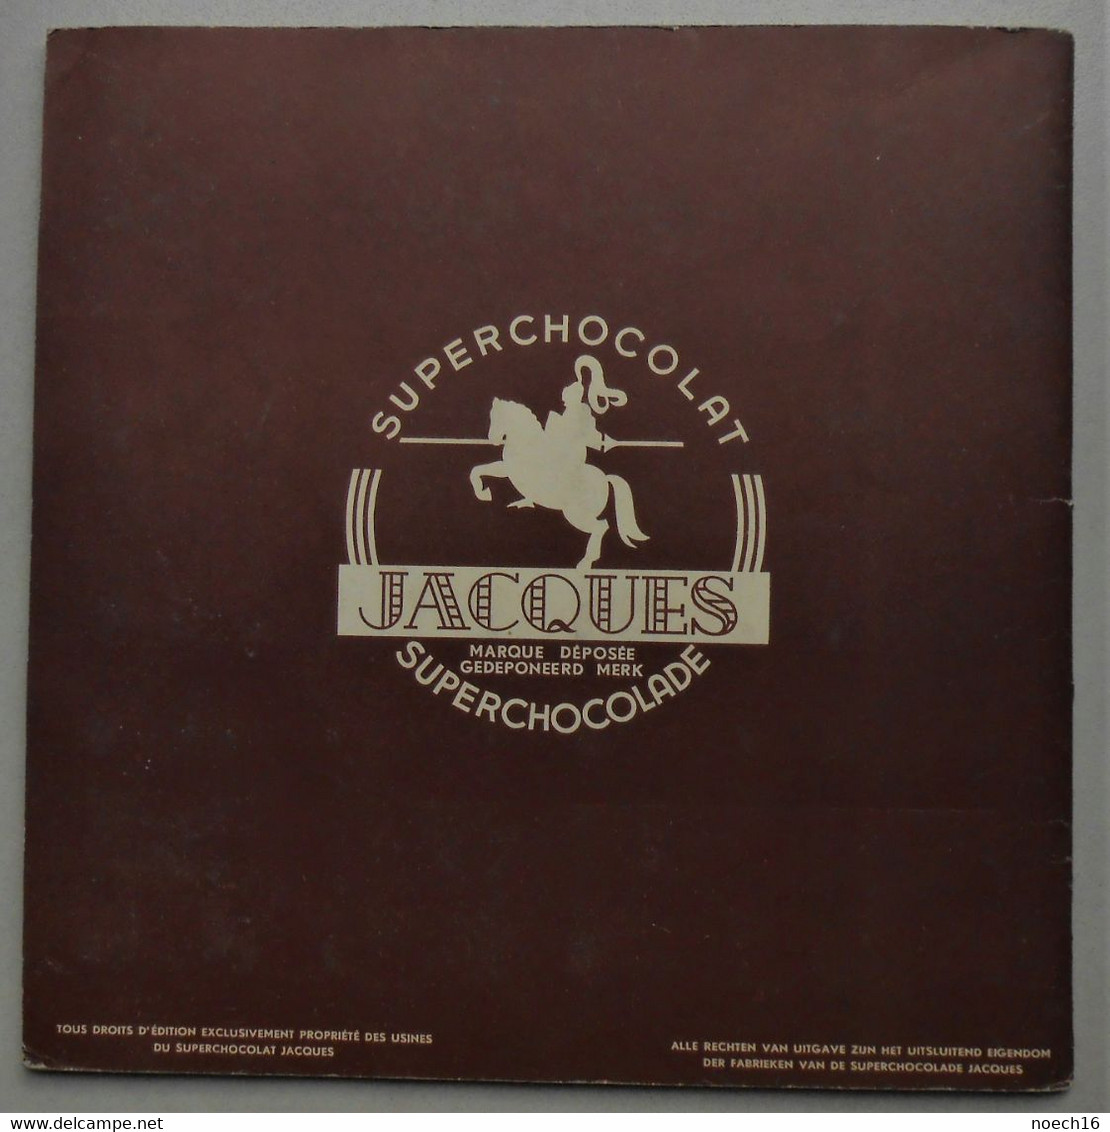 Album Chromos complet - Chocolat Jacques - Collection Chromos instructifs 2ème série